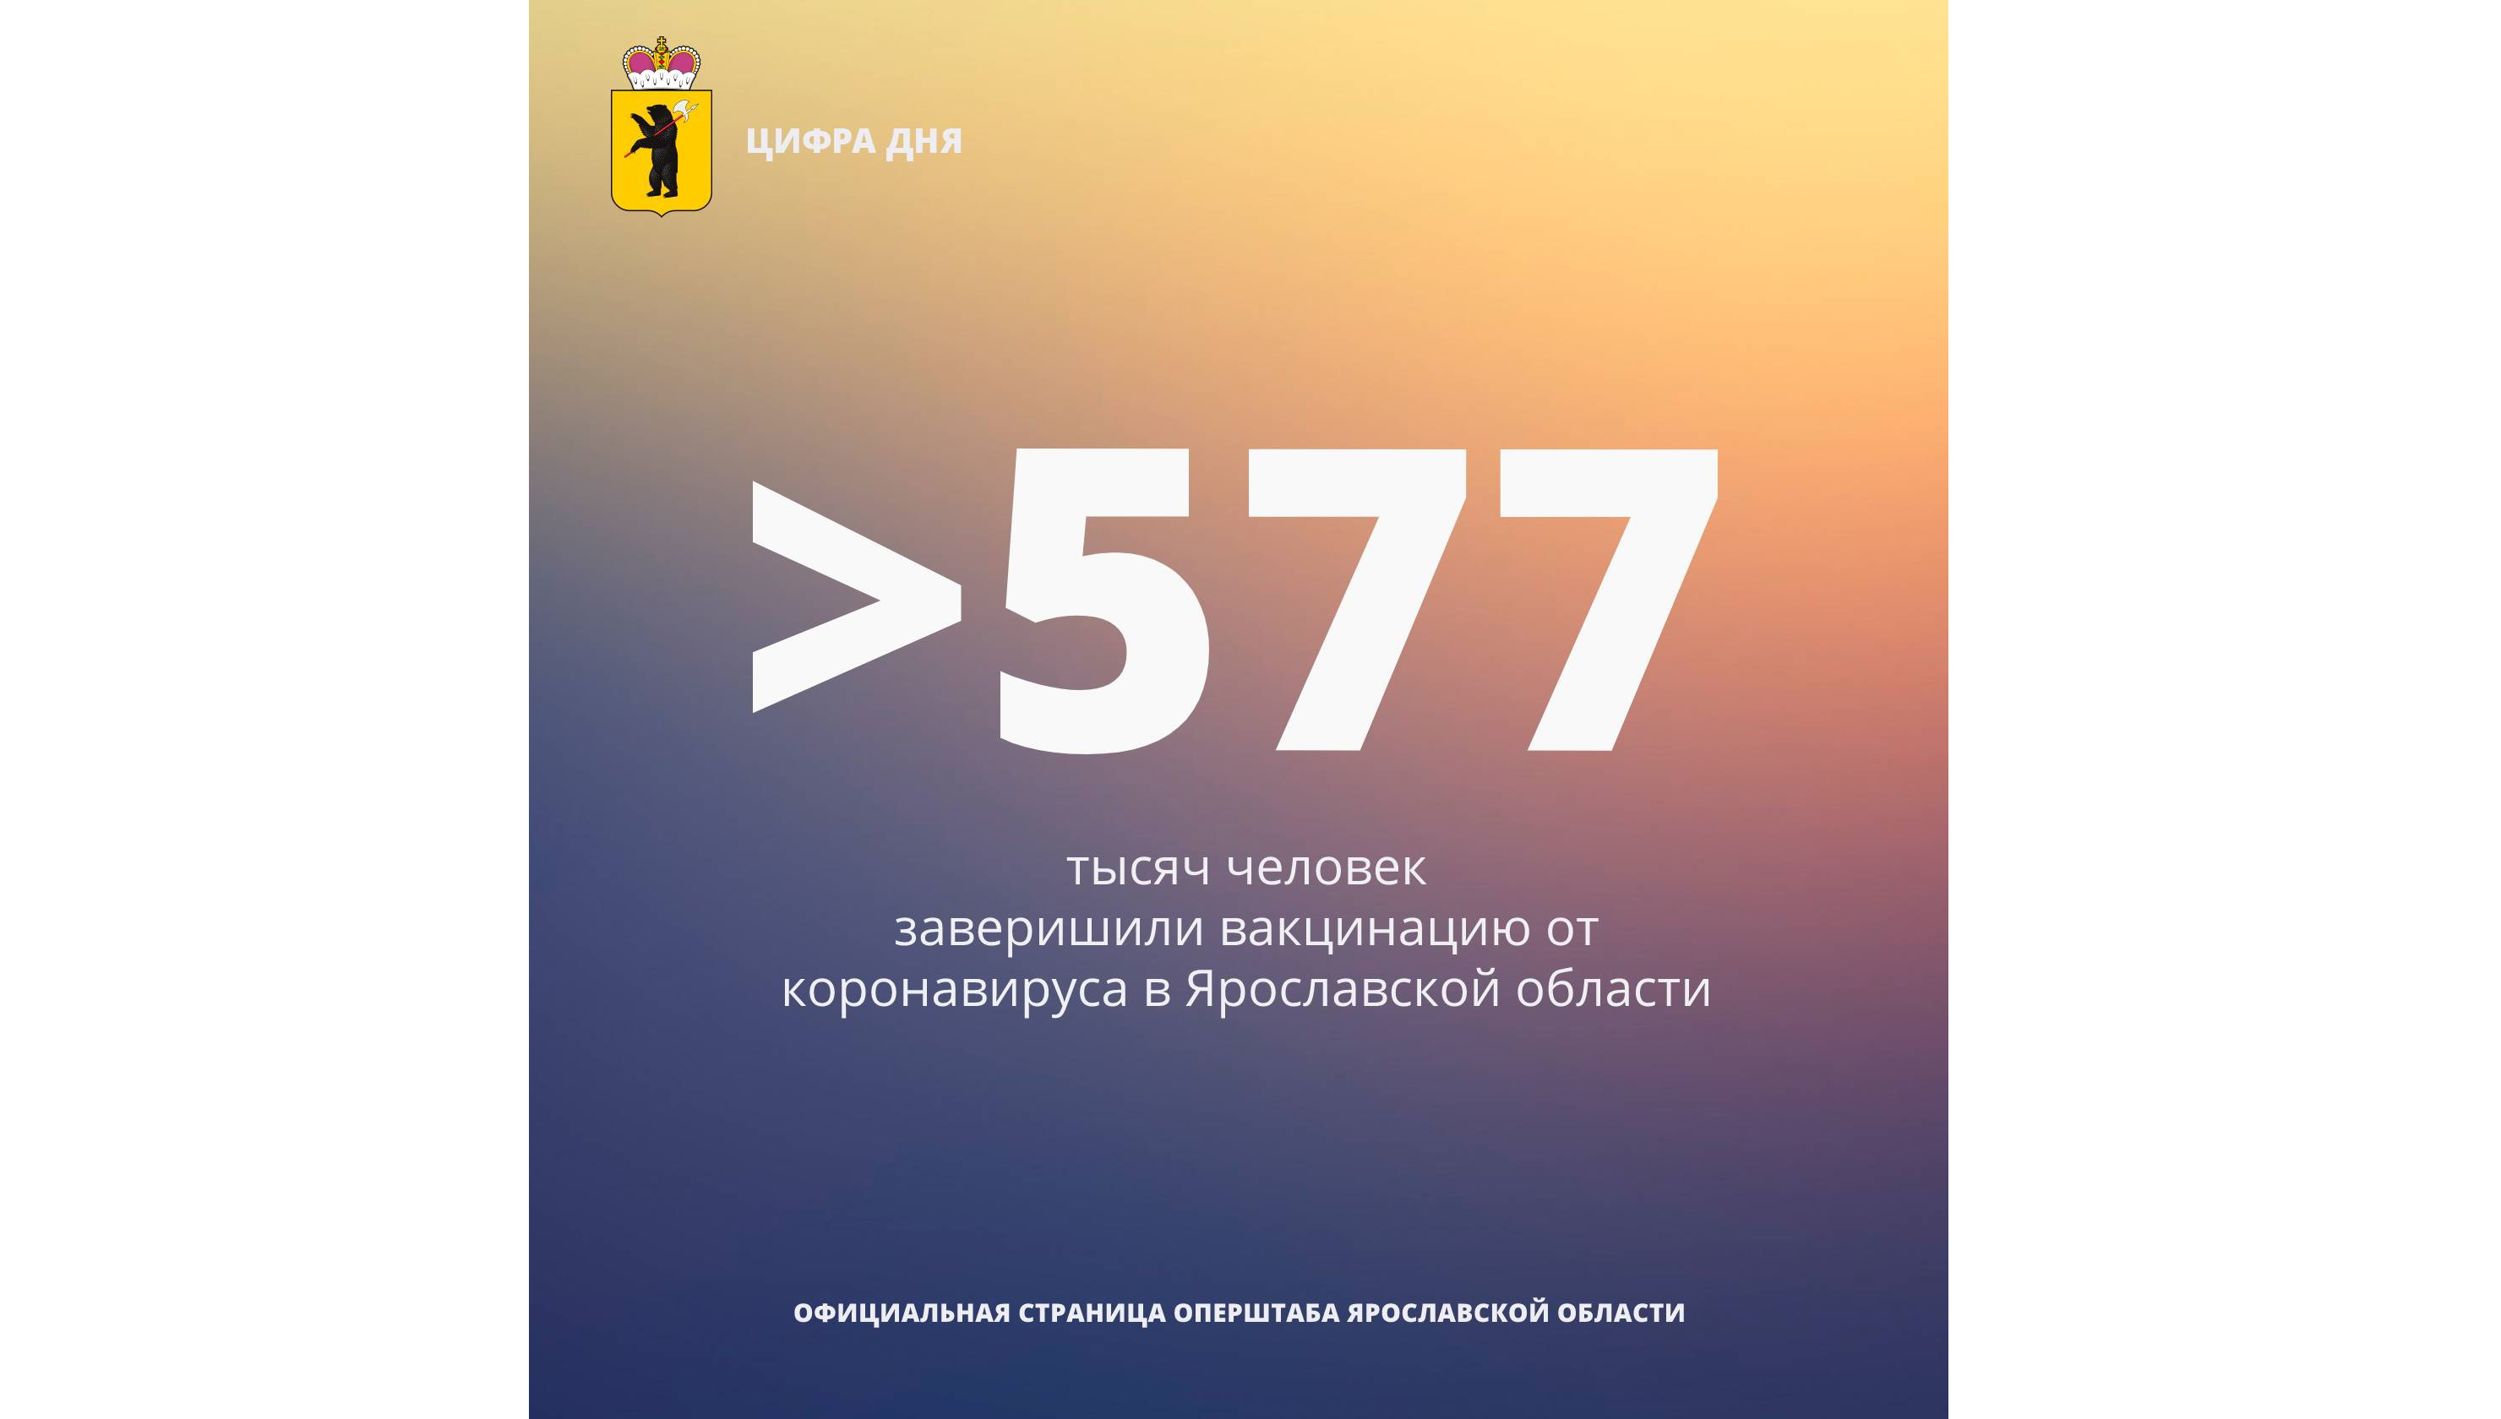 В Ярославской области больше 577 тысяч человек привились от коронавируса